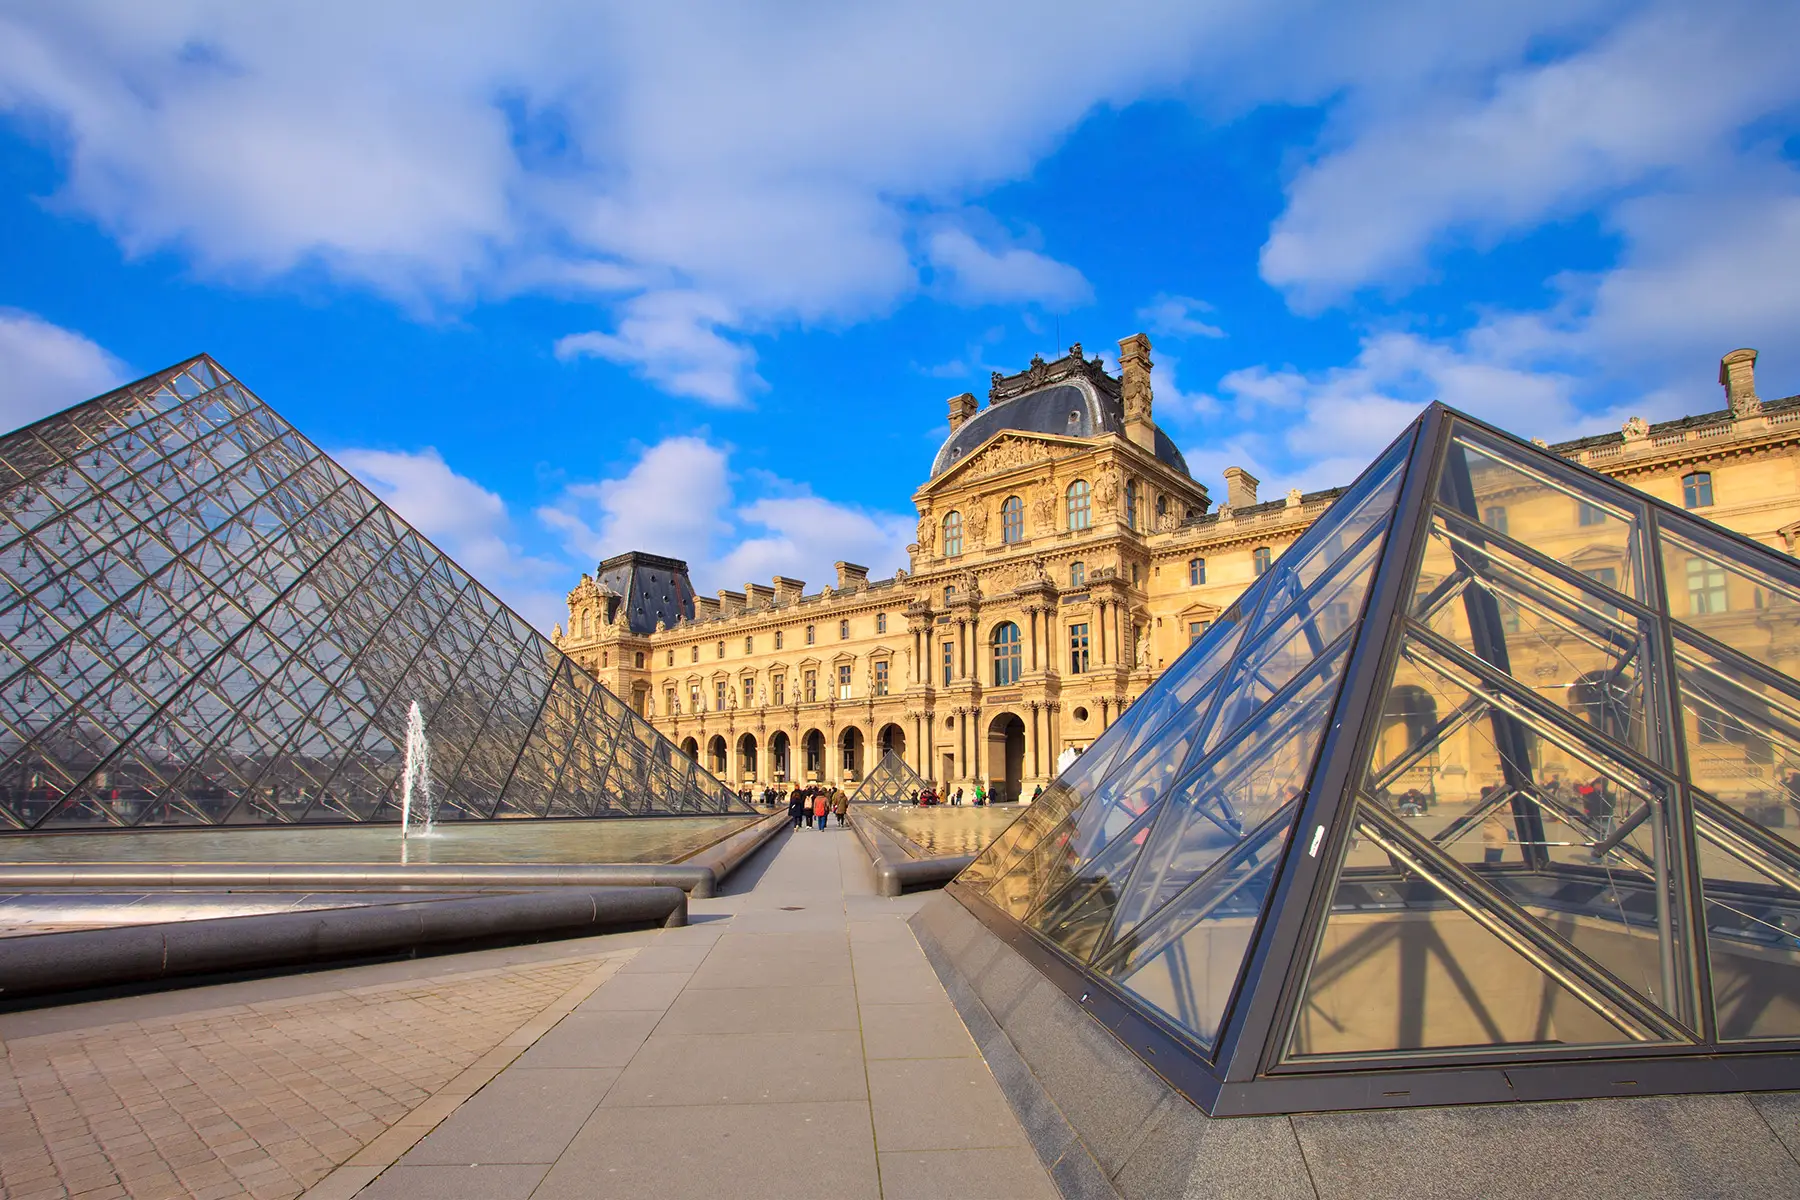 Le Louvre in Paris